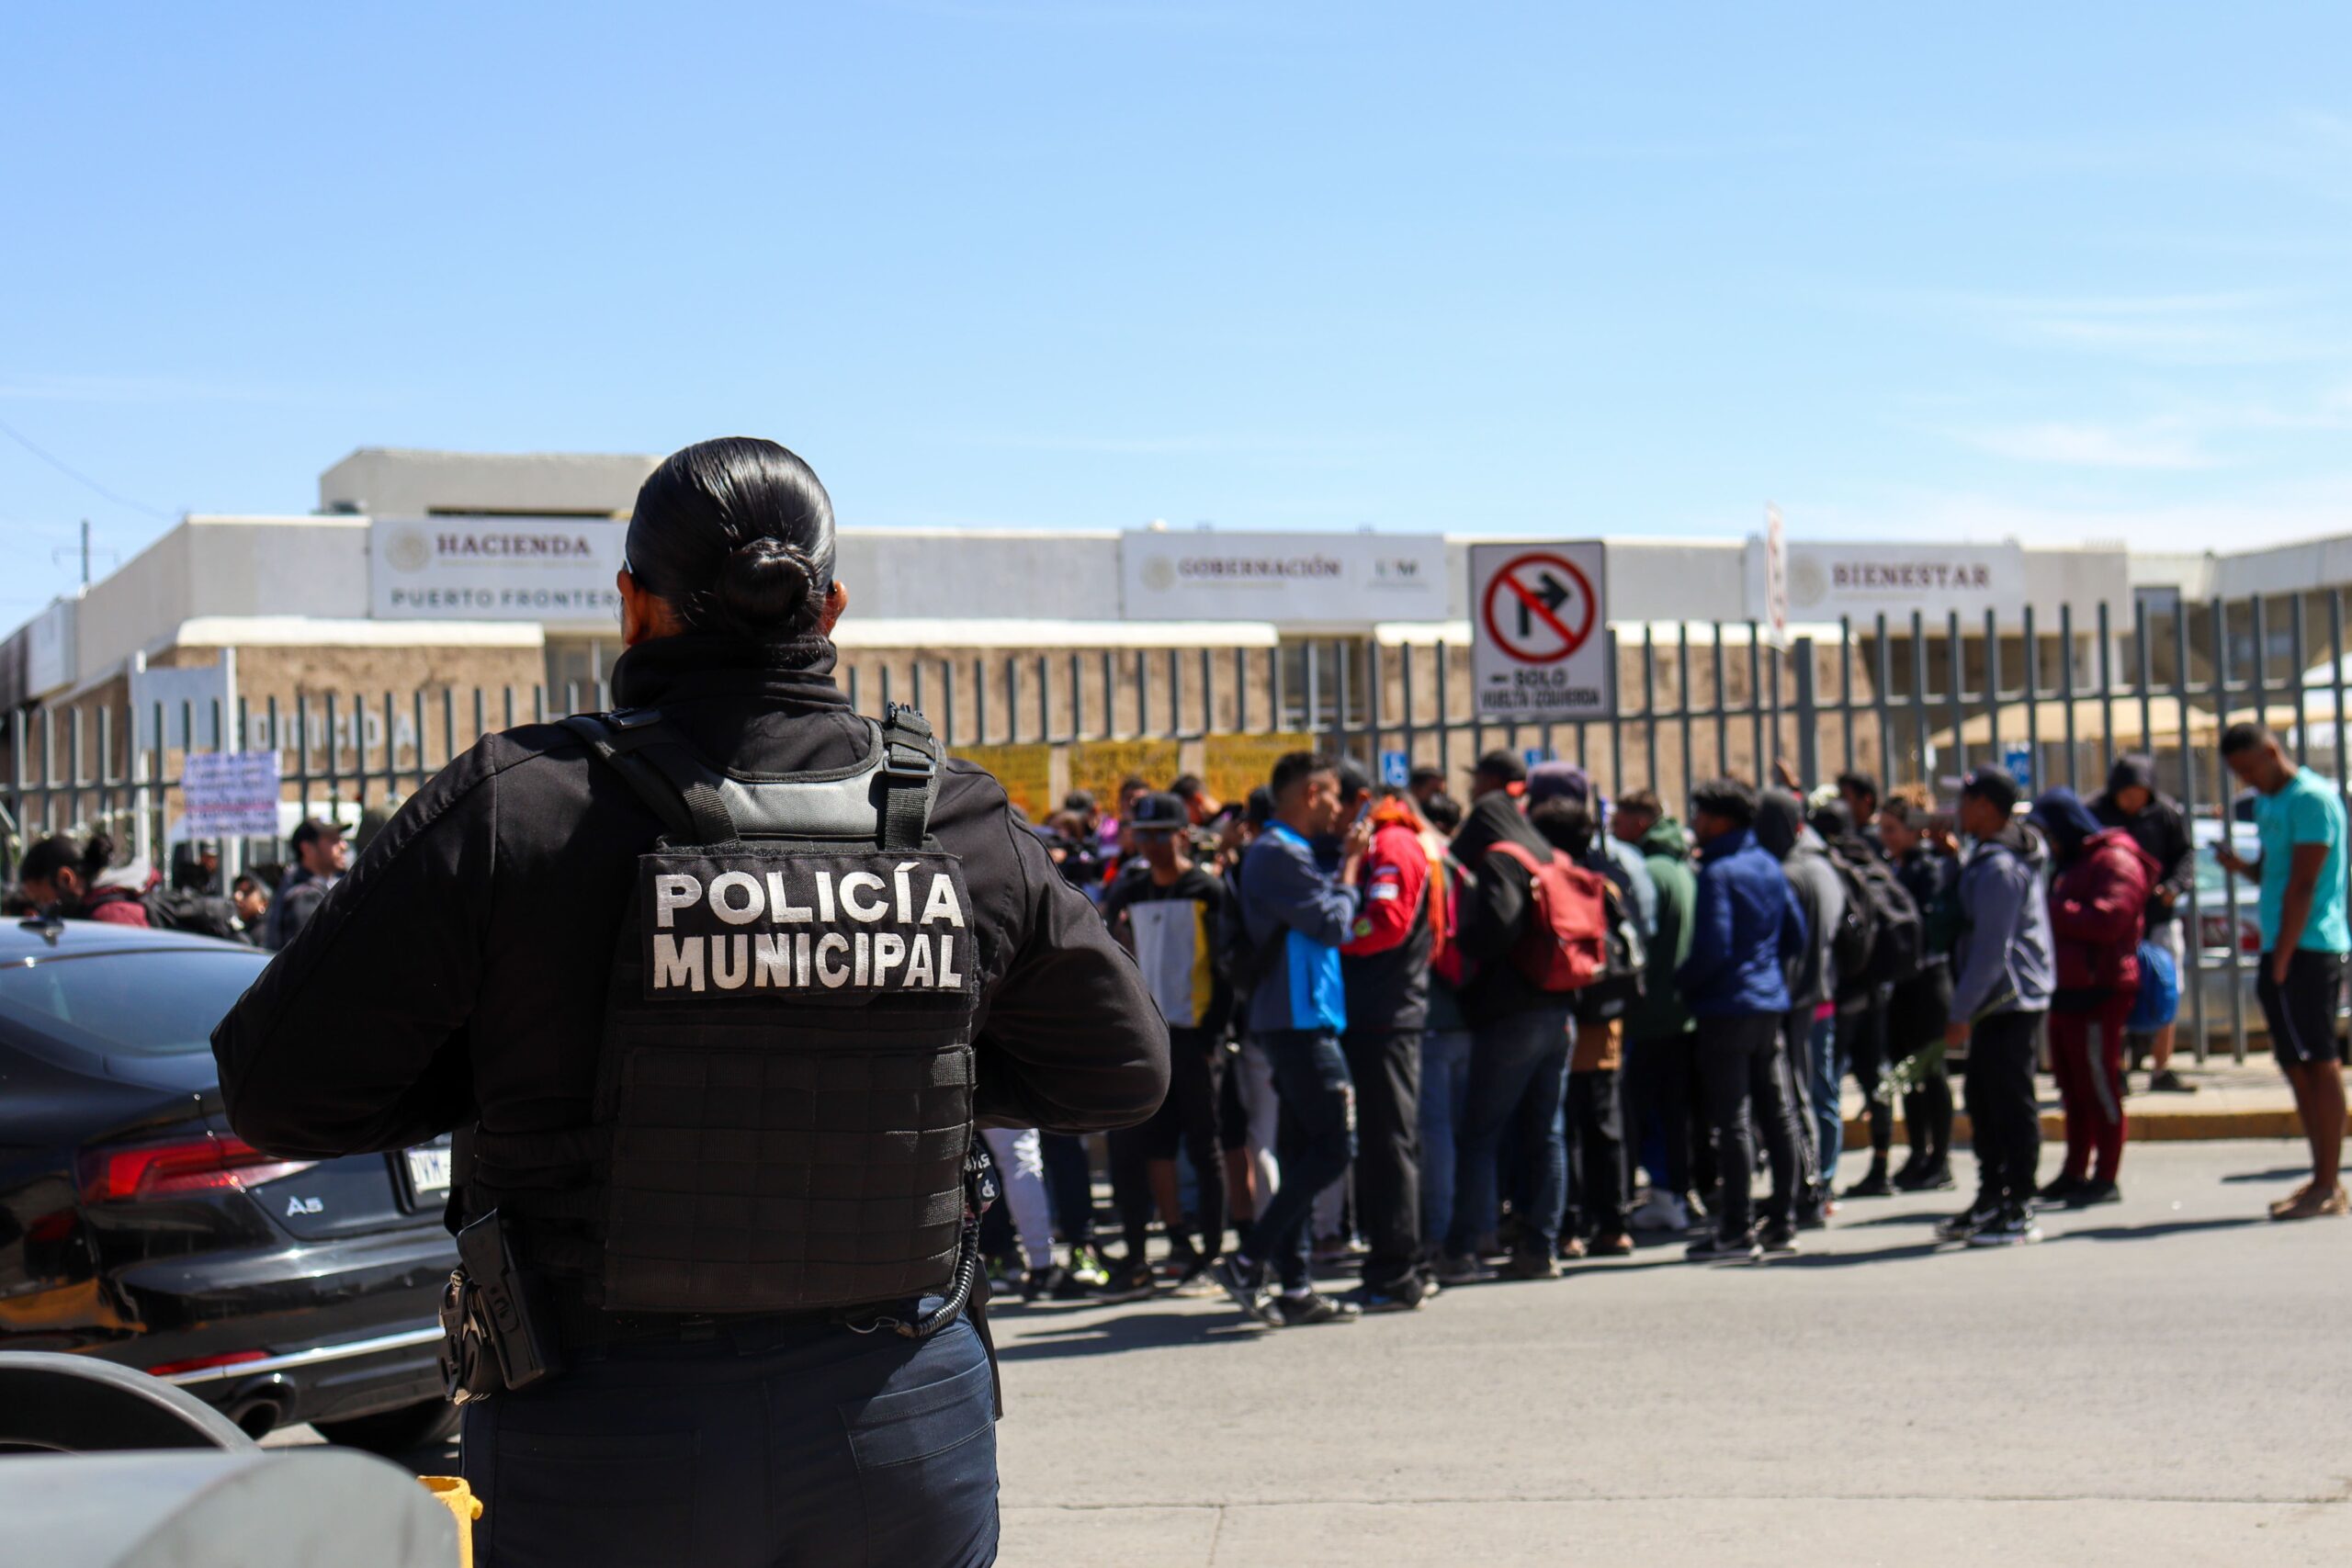 Posicionamiento urgente ante los hechos ocurridos al interior de la estación provisional del Instituto Nacional de Migración en Ciudad Juárez